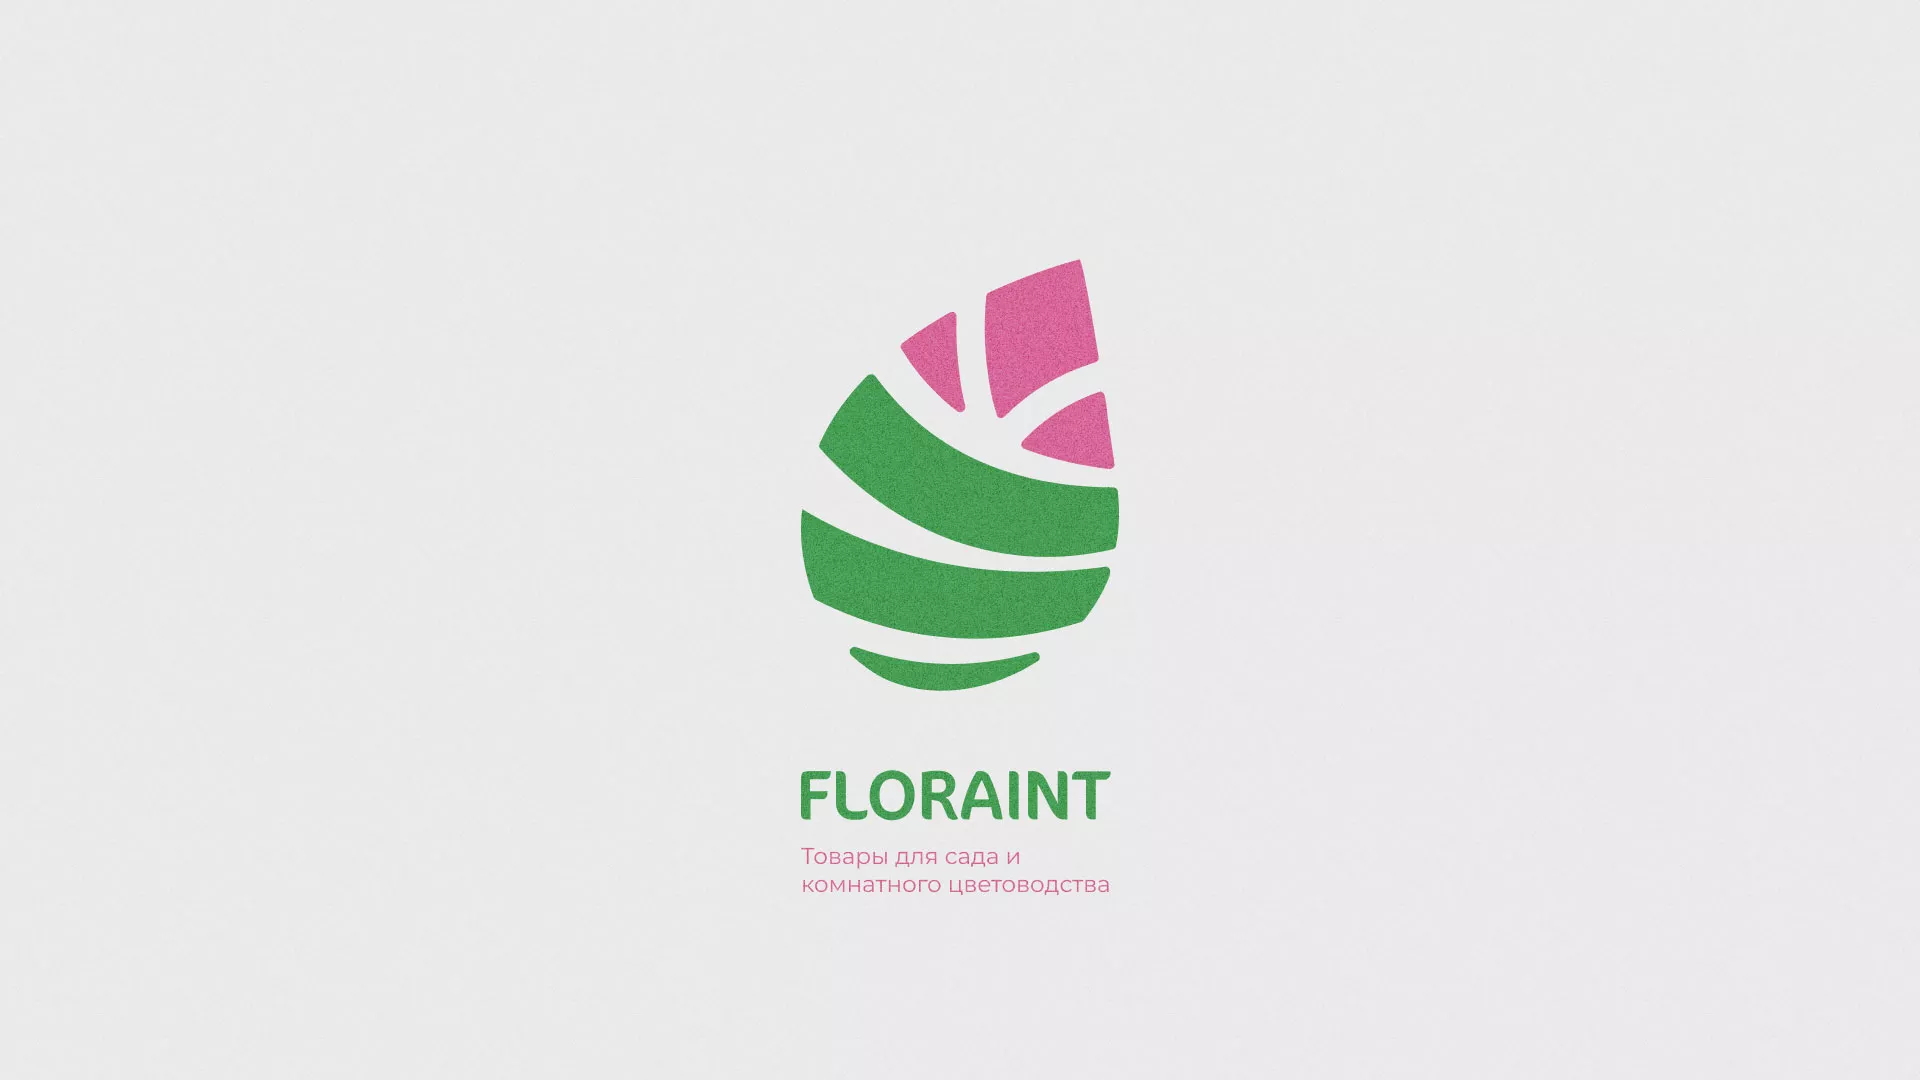 Разработка оформления профиля Instagram для магазина «Floraint» в Советской Гавани